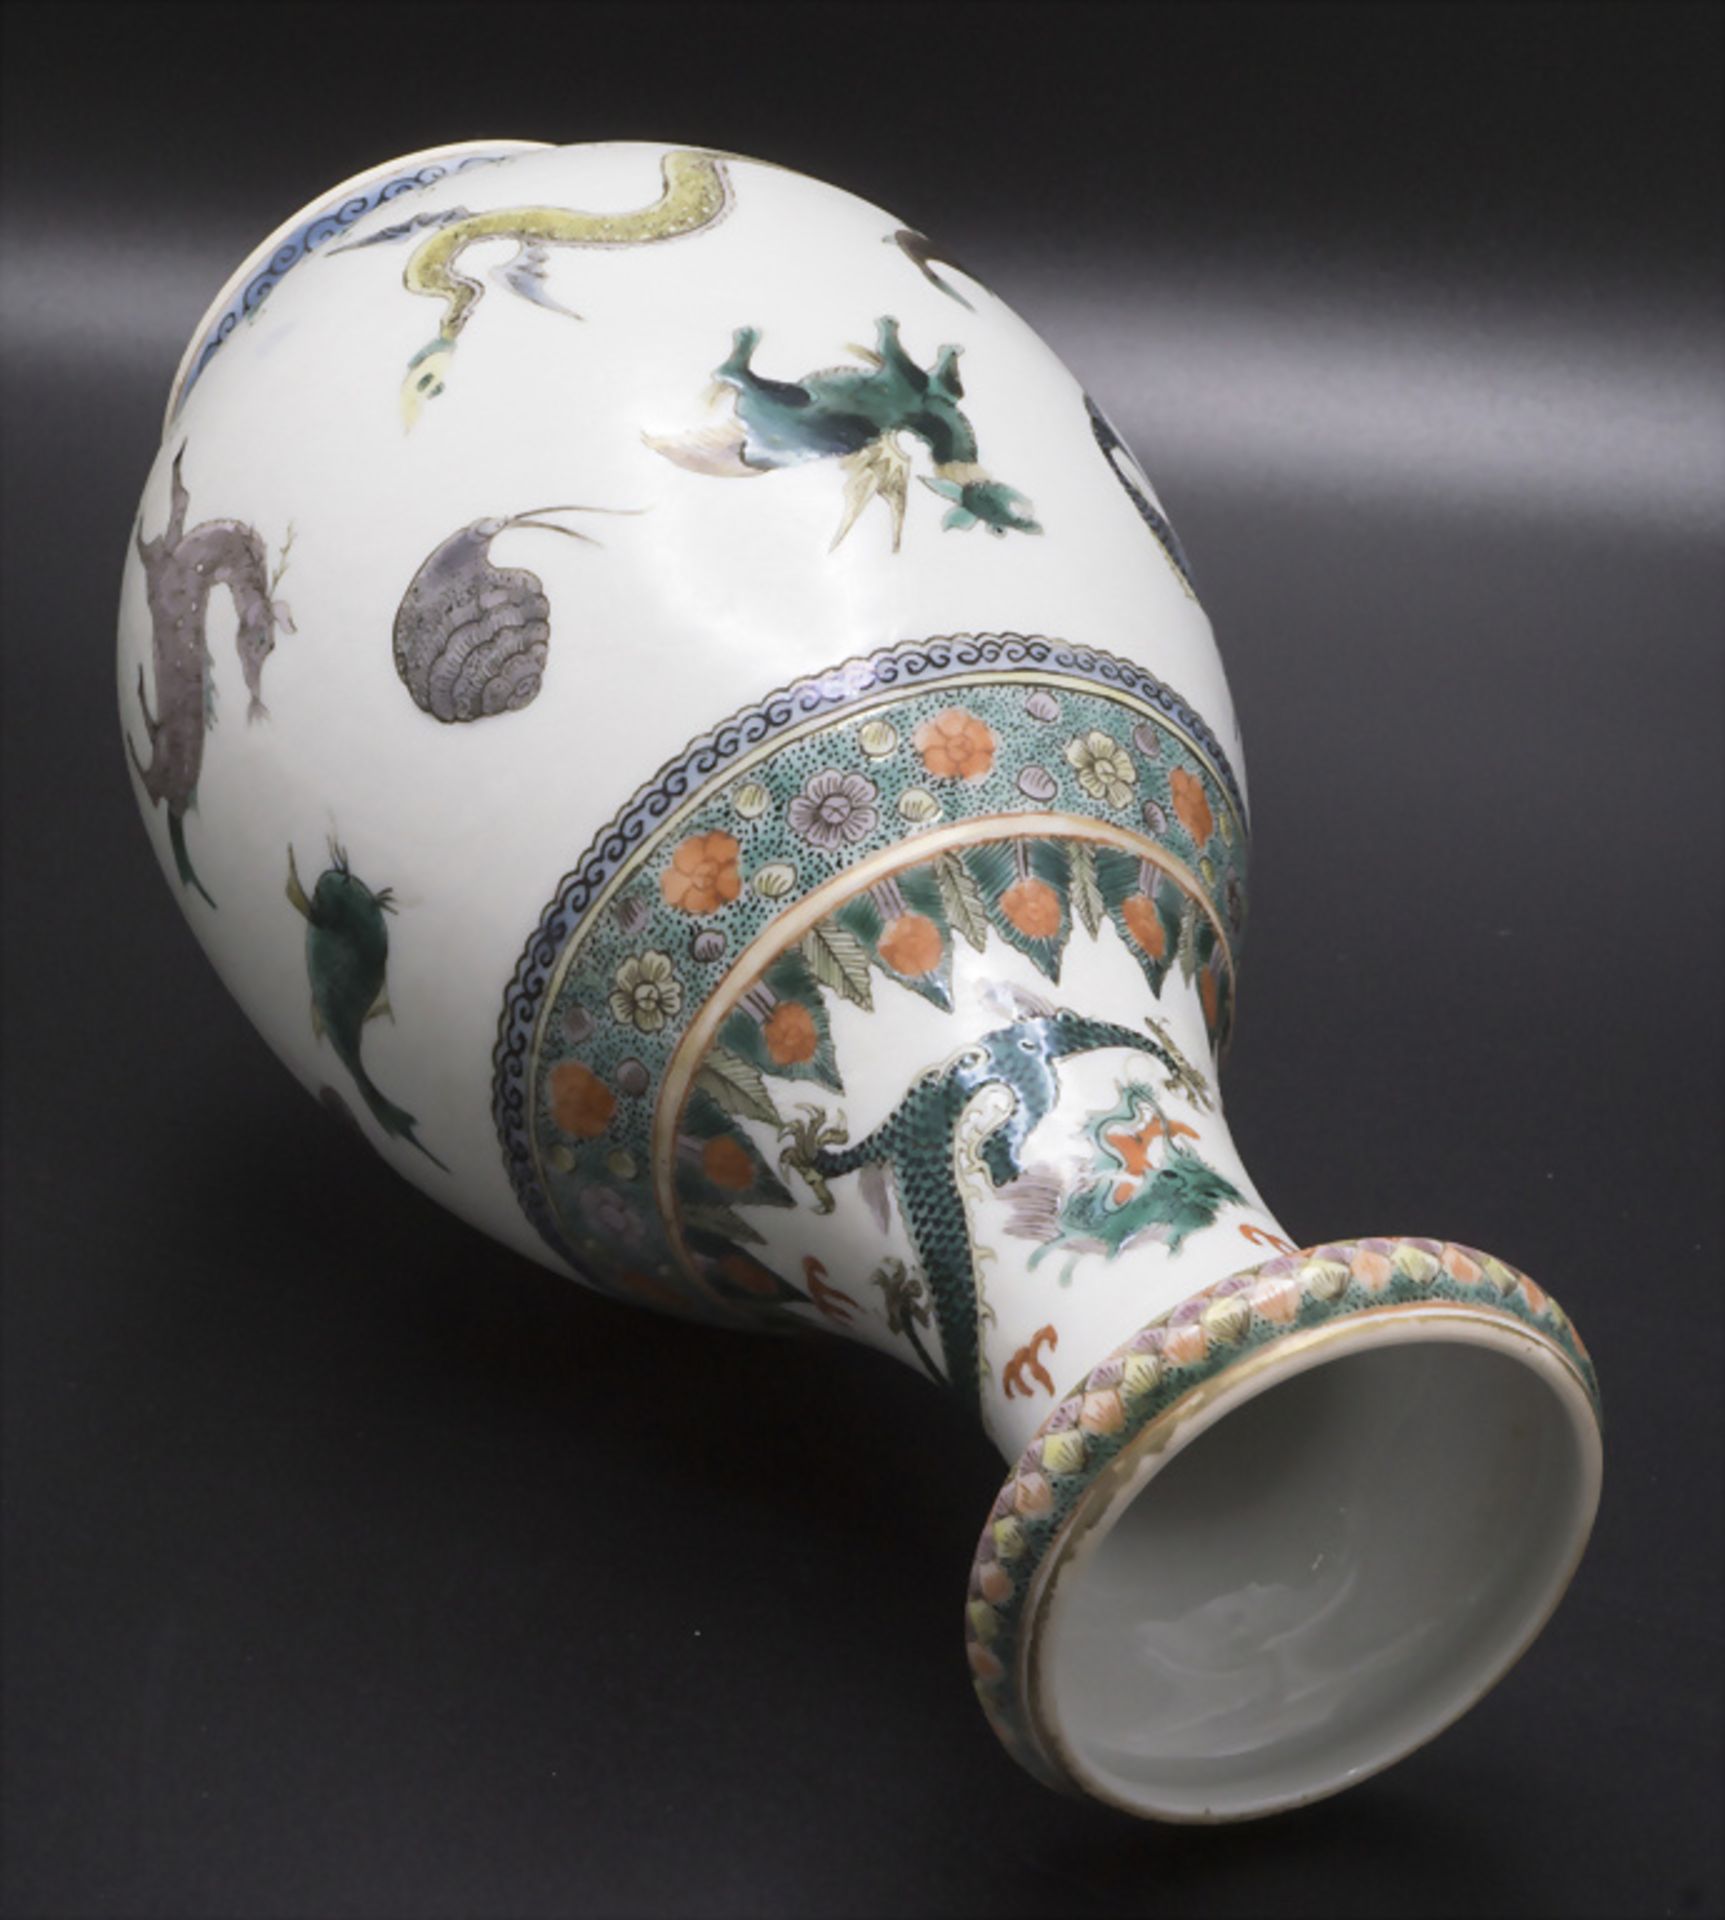 Sehr seltene 'SCRAFFITO' Porzellan Ziervase / A very rare 'Scraffito' decorative porcelain ... - Bild 4 aus 10